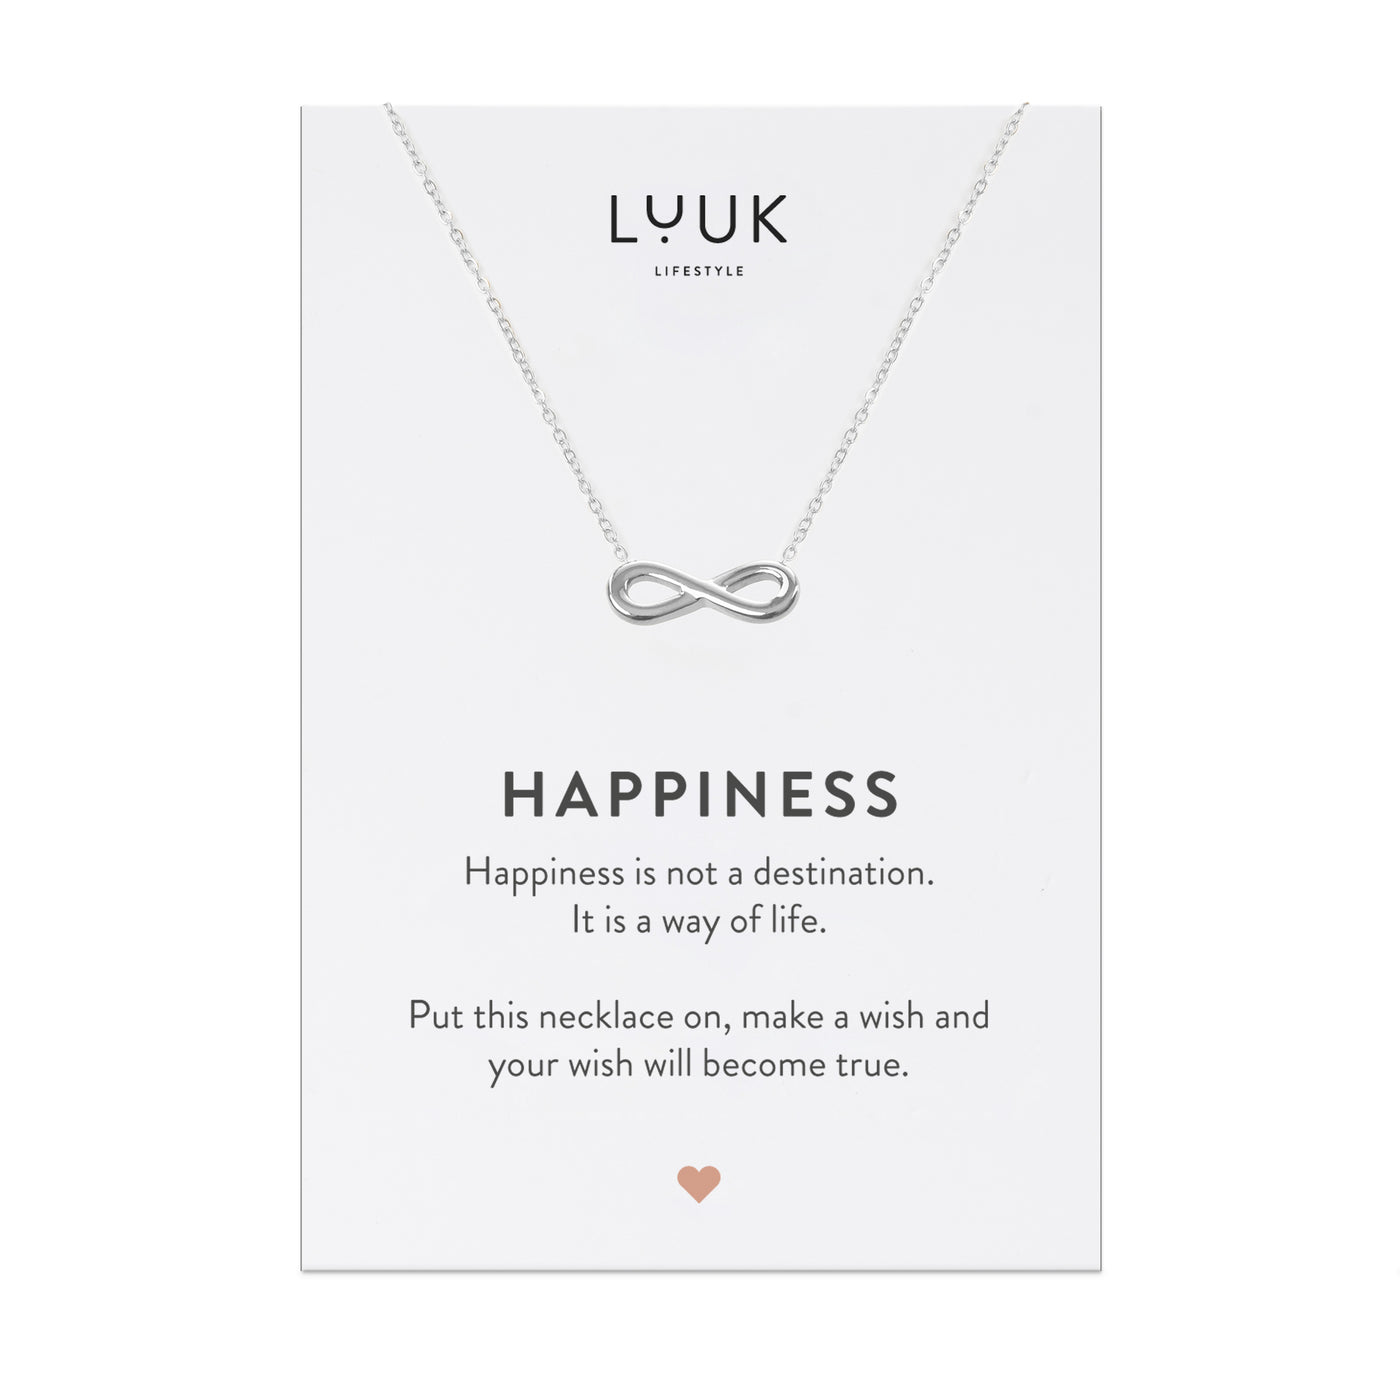 Halskette mit glänzendem Infinity Anhänger in Edelstahl auf Happiness Spruchkarte von der Marke Luuk Lifestyle 